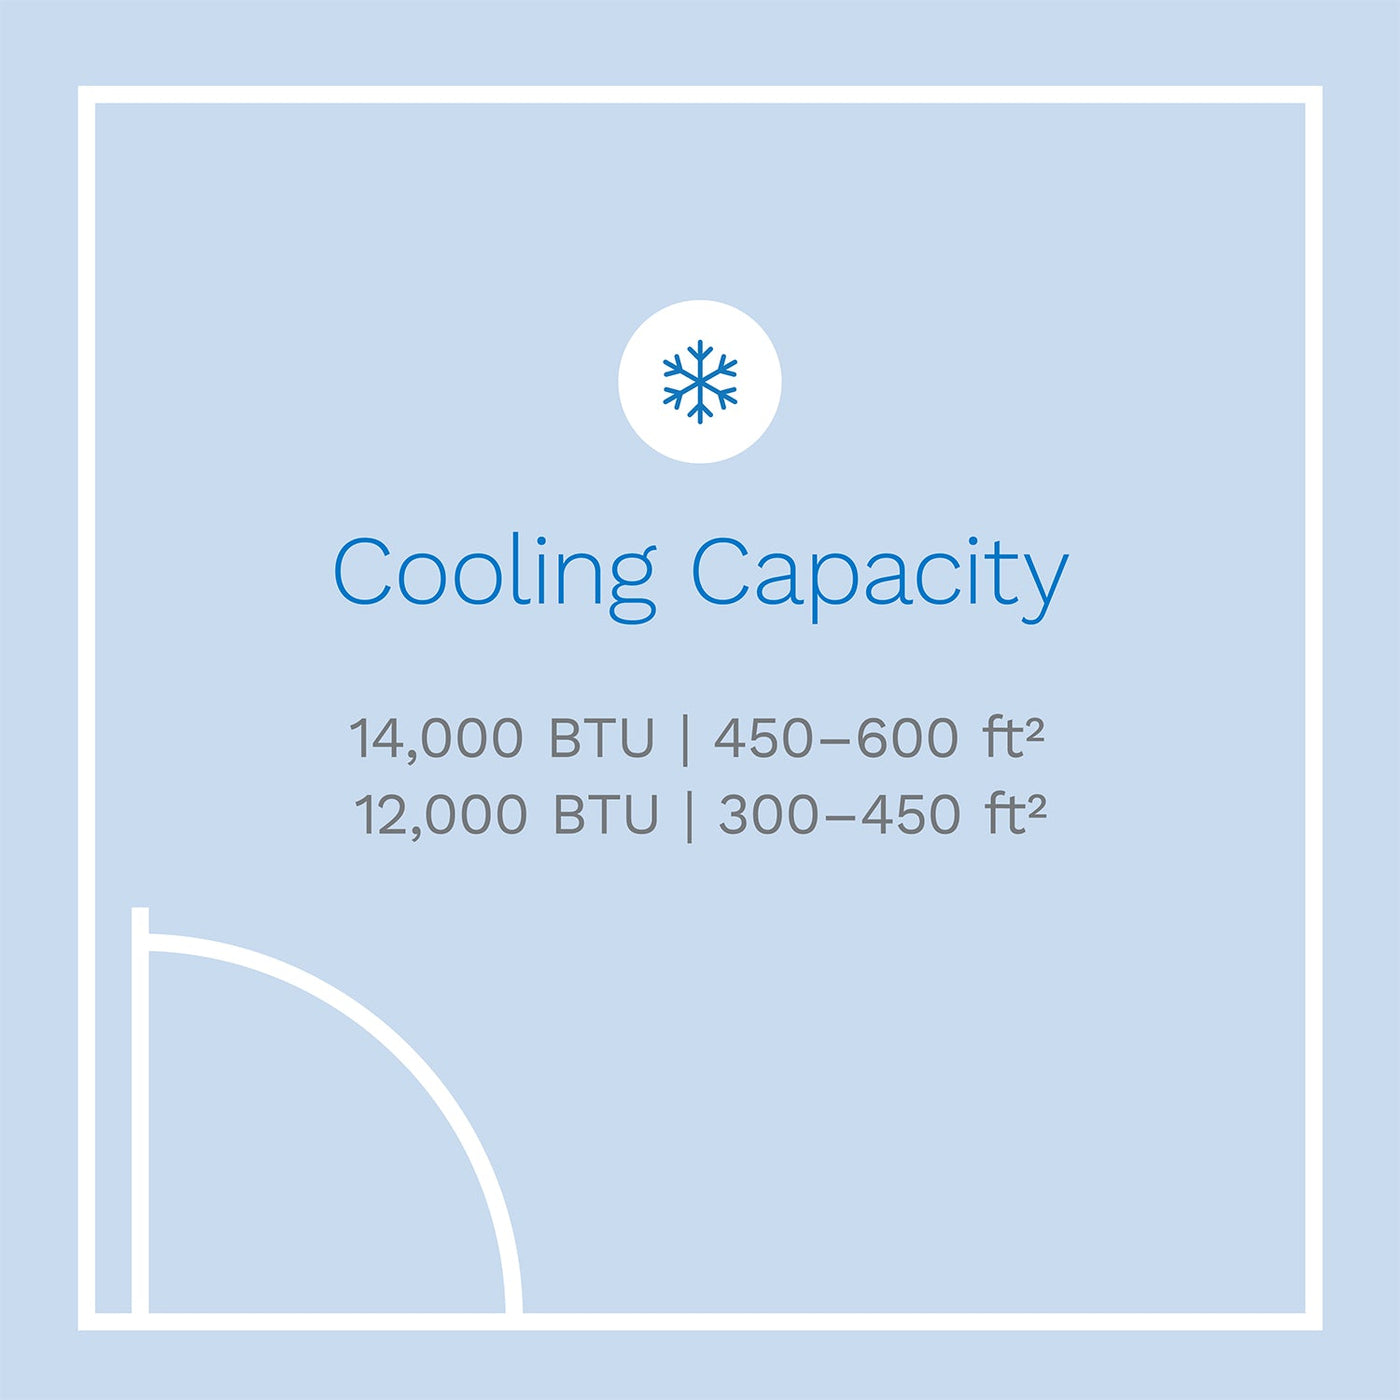 hOmeLabs | 14000 BTU Portable Air Conditioner (new CEC 10000 BTU)